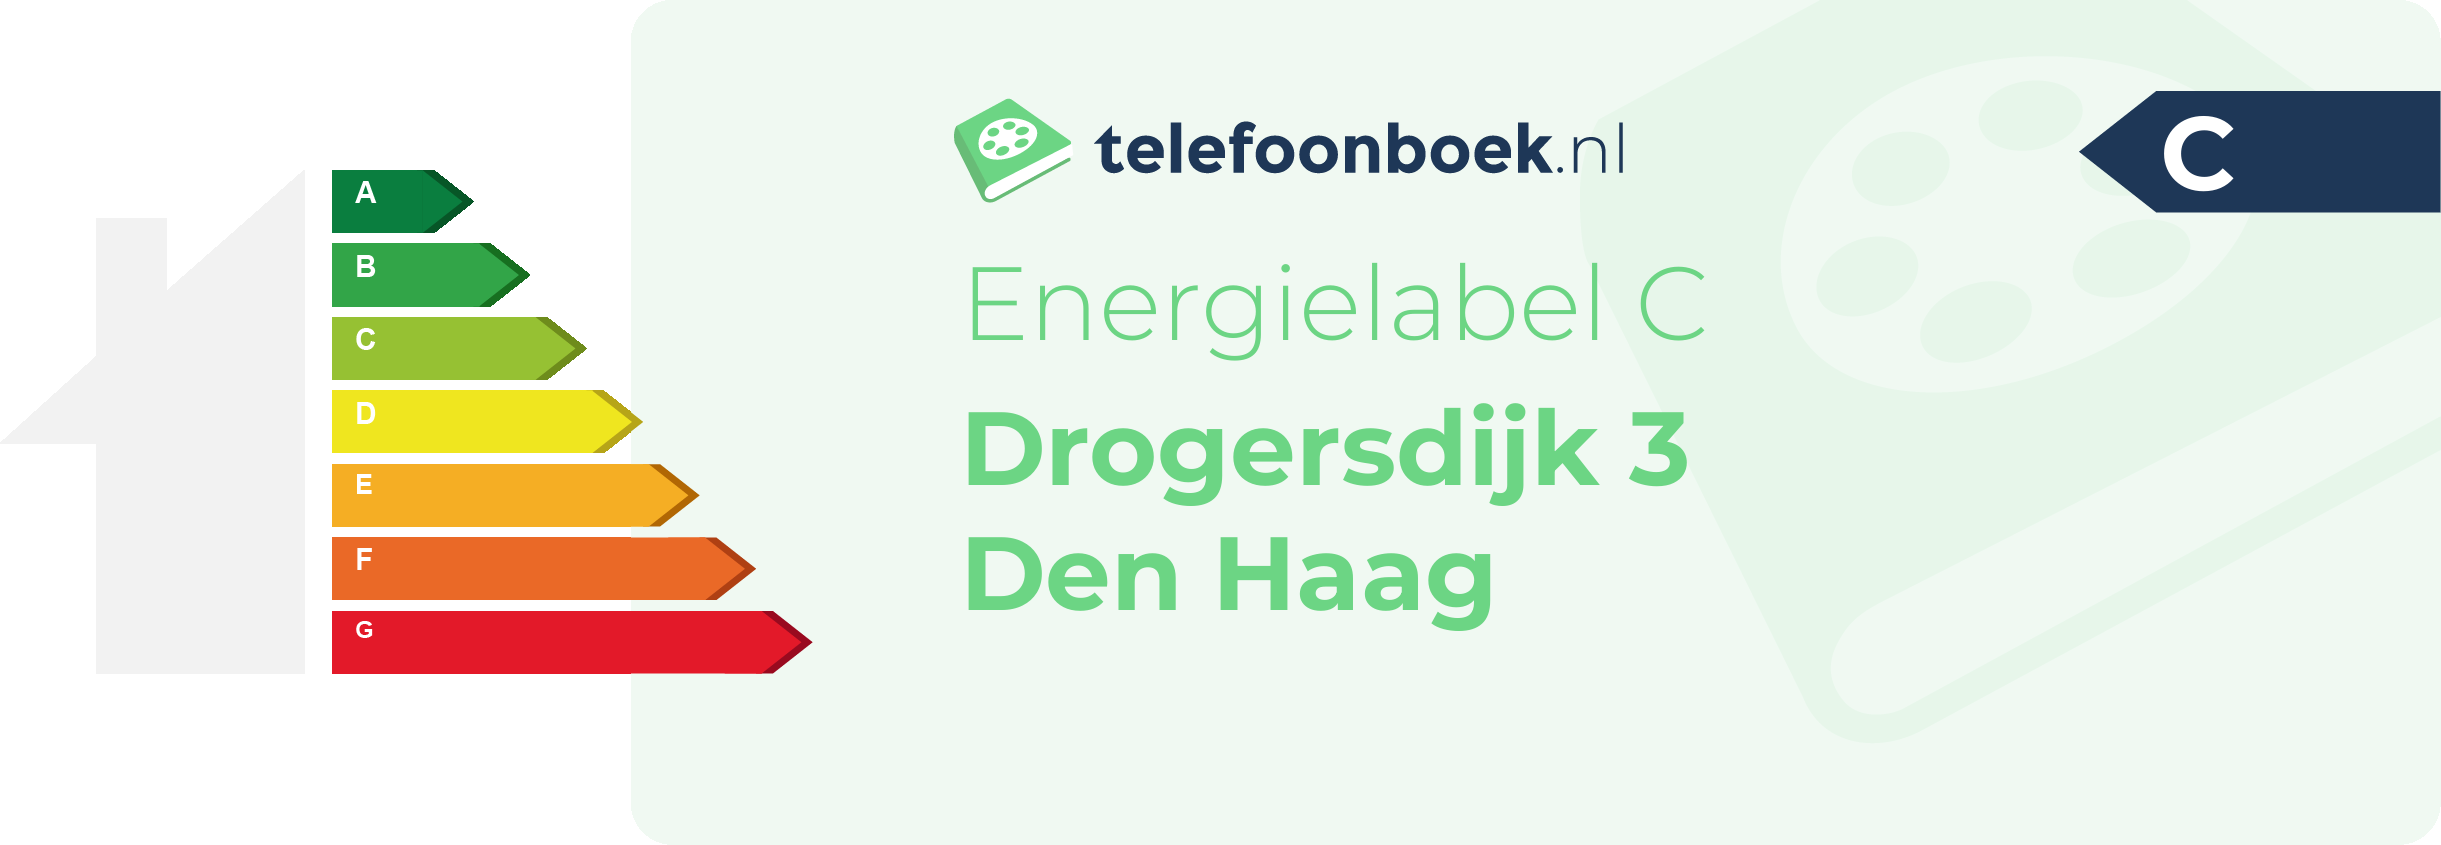 Energielabel Drogersdijk 3 Den Haag